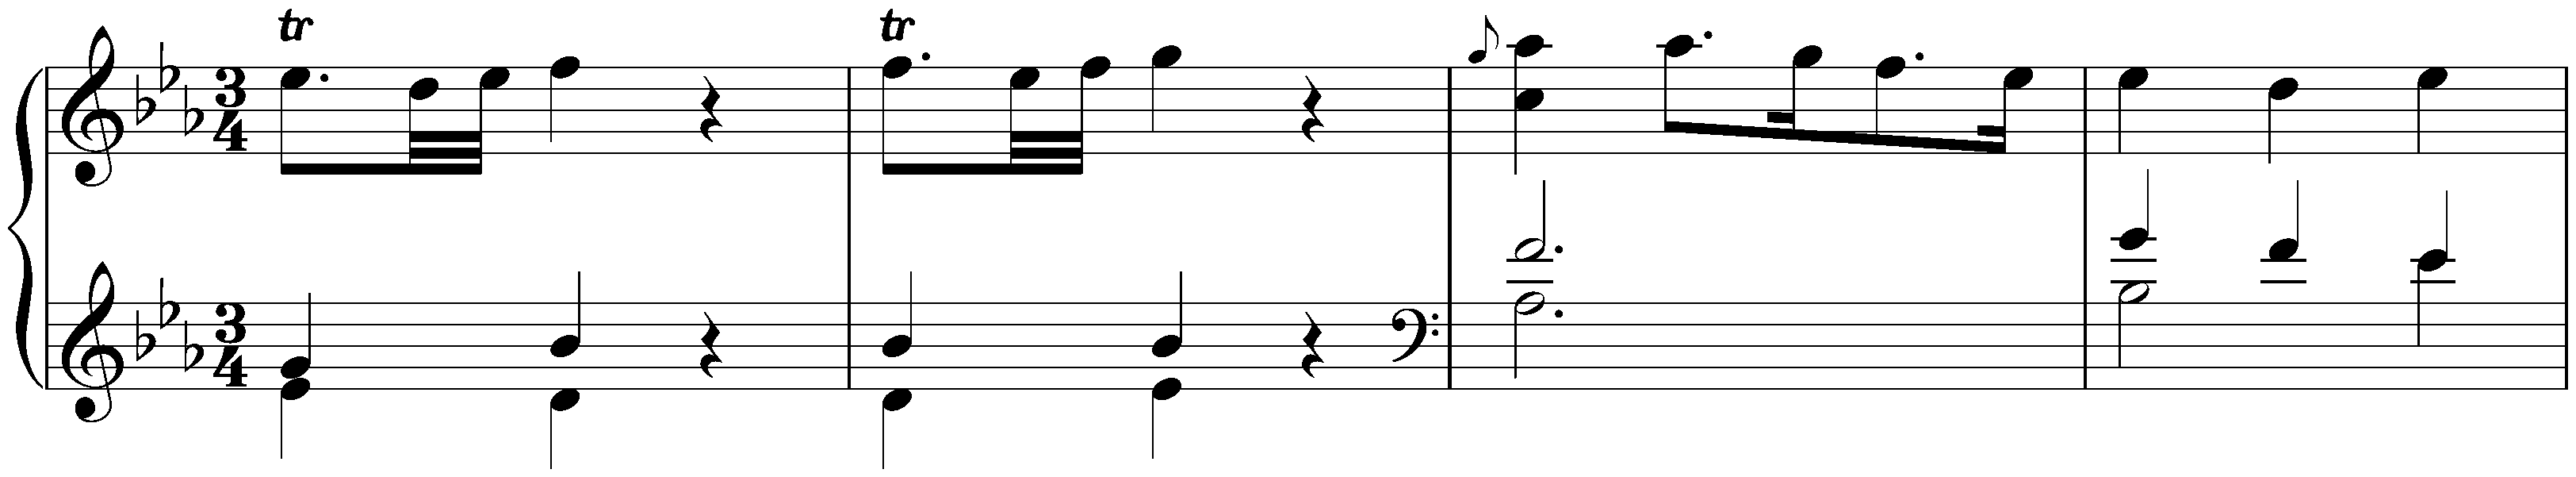 Sonata in E-flat major, Hob. XVI:Es2; 3. Menuetto – Trio